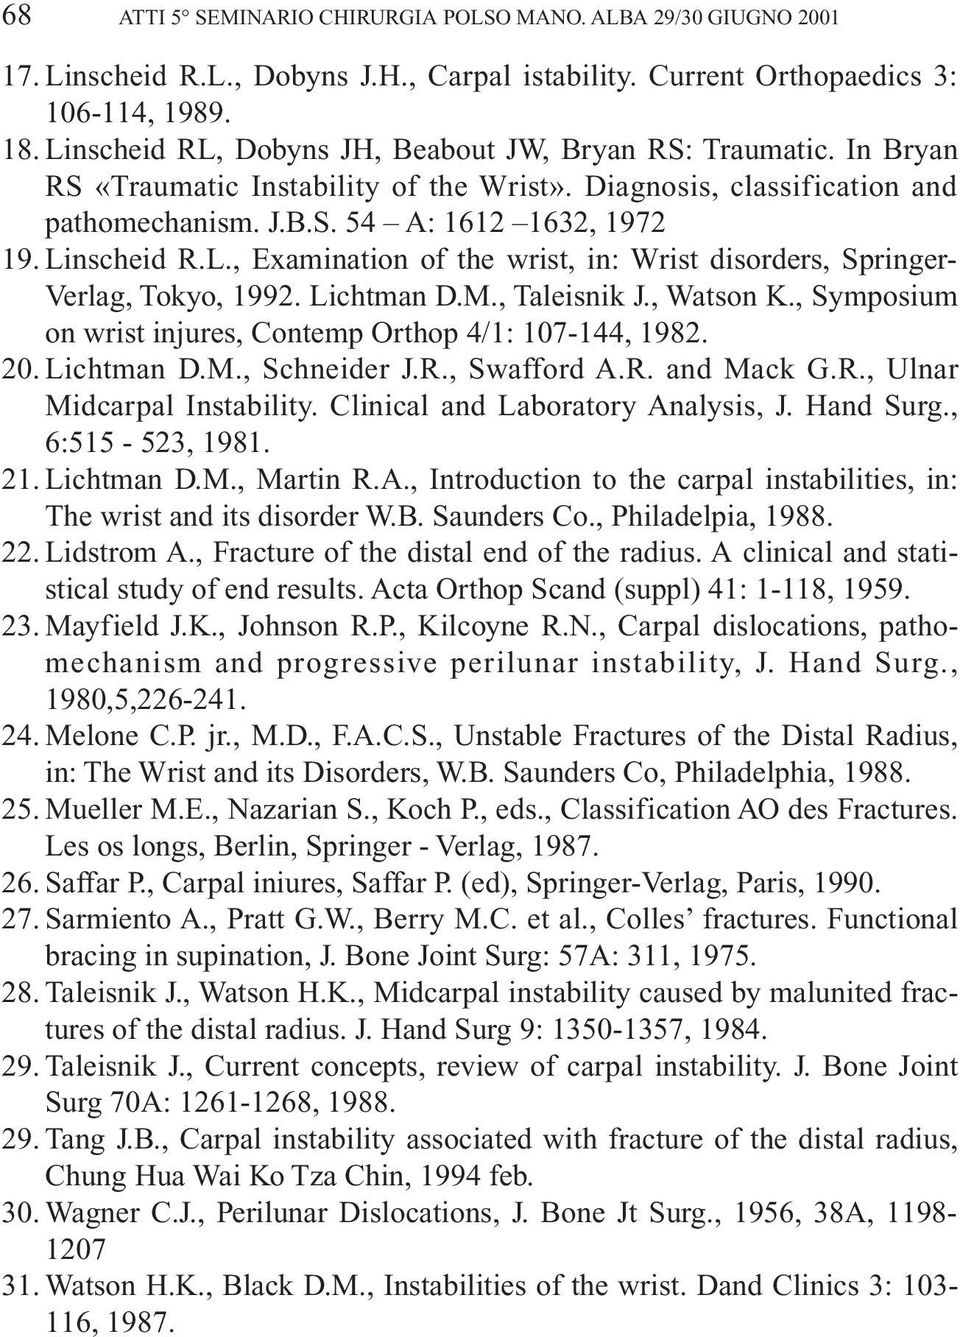 L., Examination of the wrist, in: Wrist disorders, Springer- Verlag, Tokyo, 1992. Lichtman D.M., Taleisnik J., Watson K., Symposium on wrist injures, Contemp Orthop 4/1: 107-144, 1982. 20. Lichtman D.M., Schneider J.